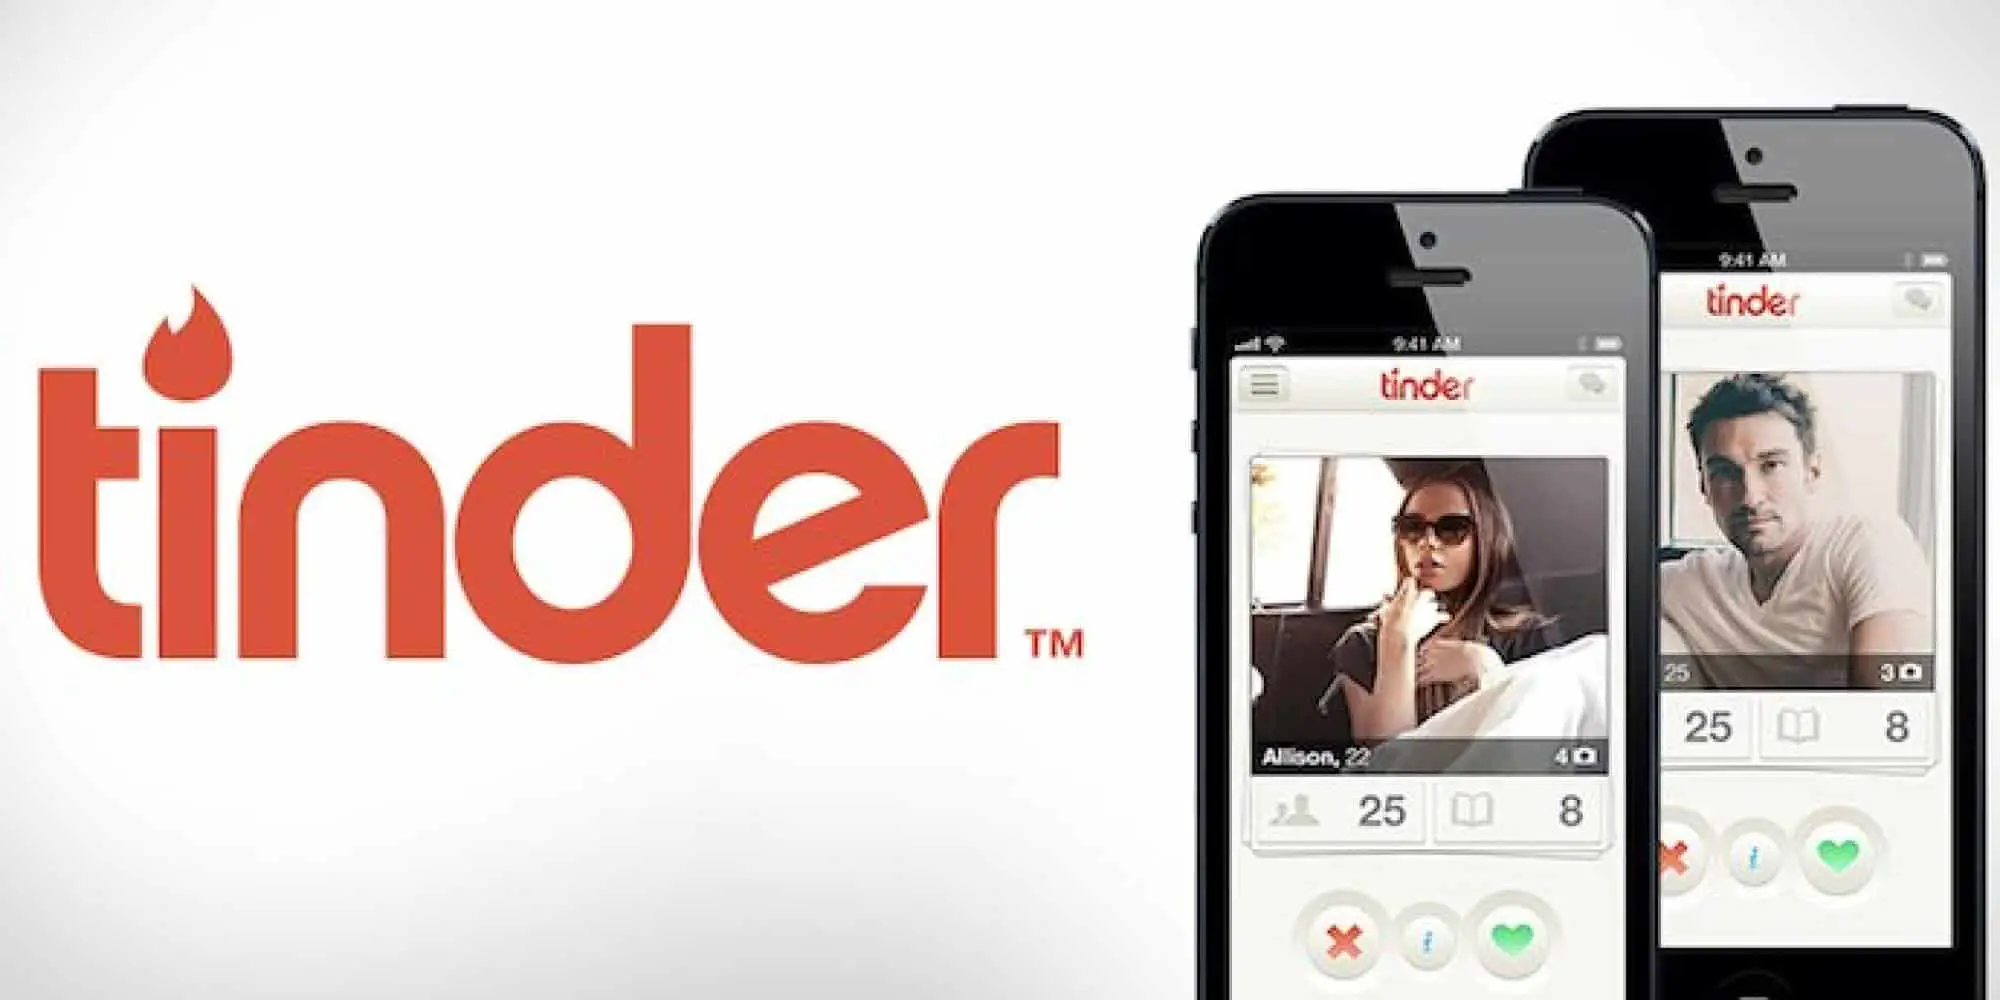 Windows for phone app tinder Download Tinder